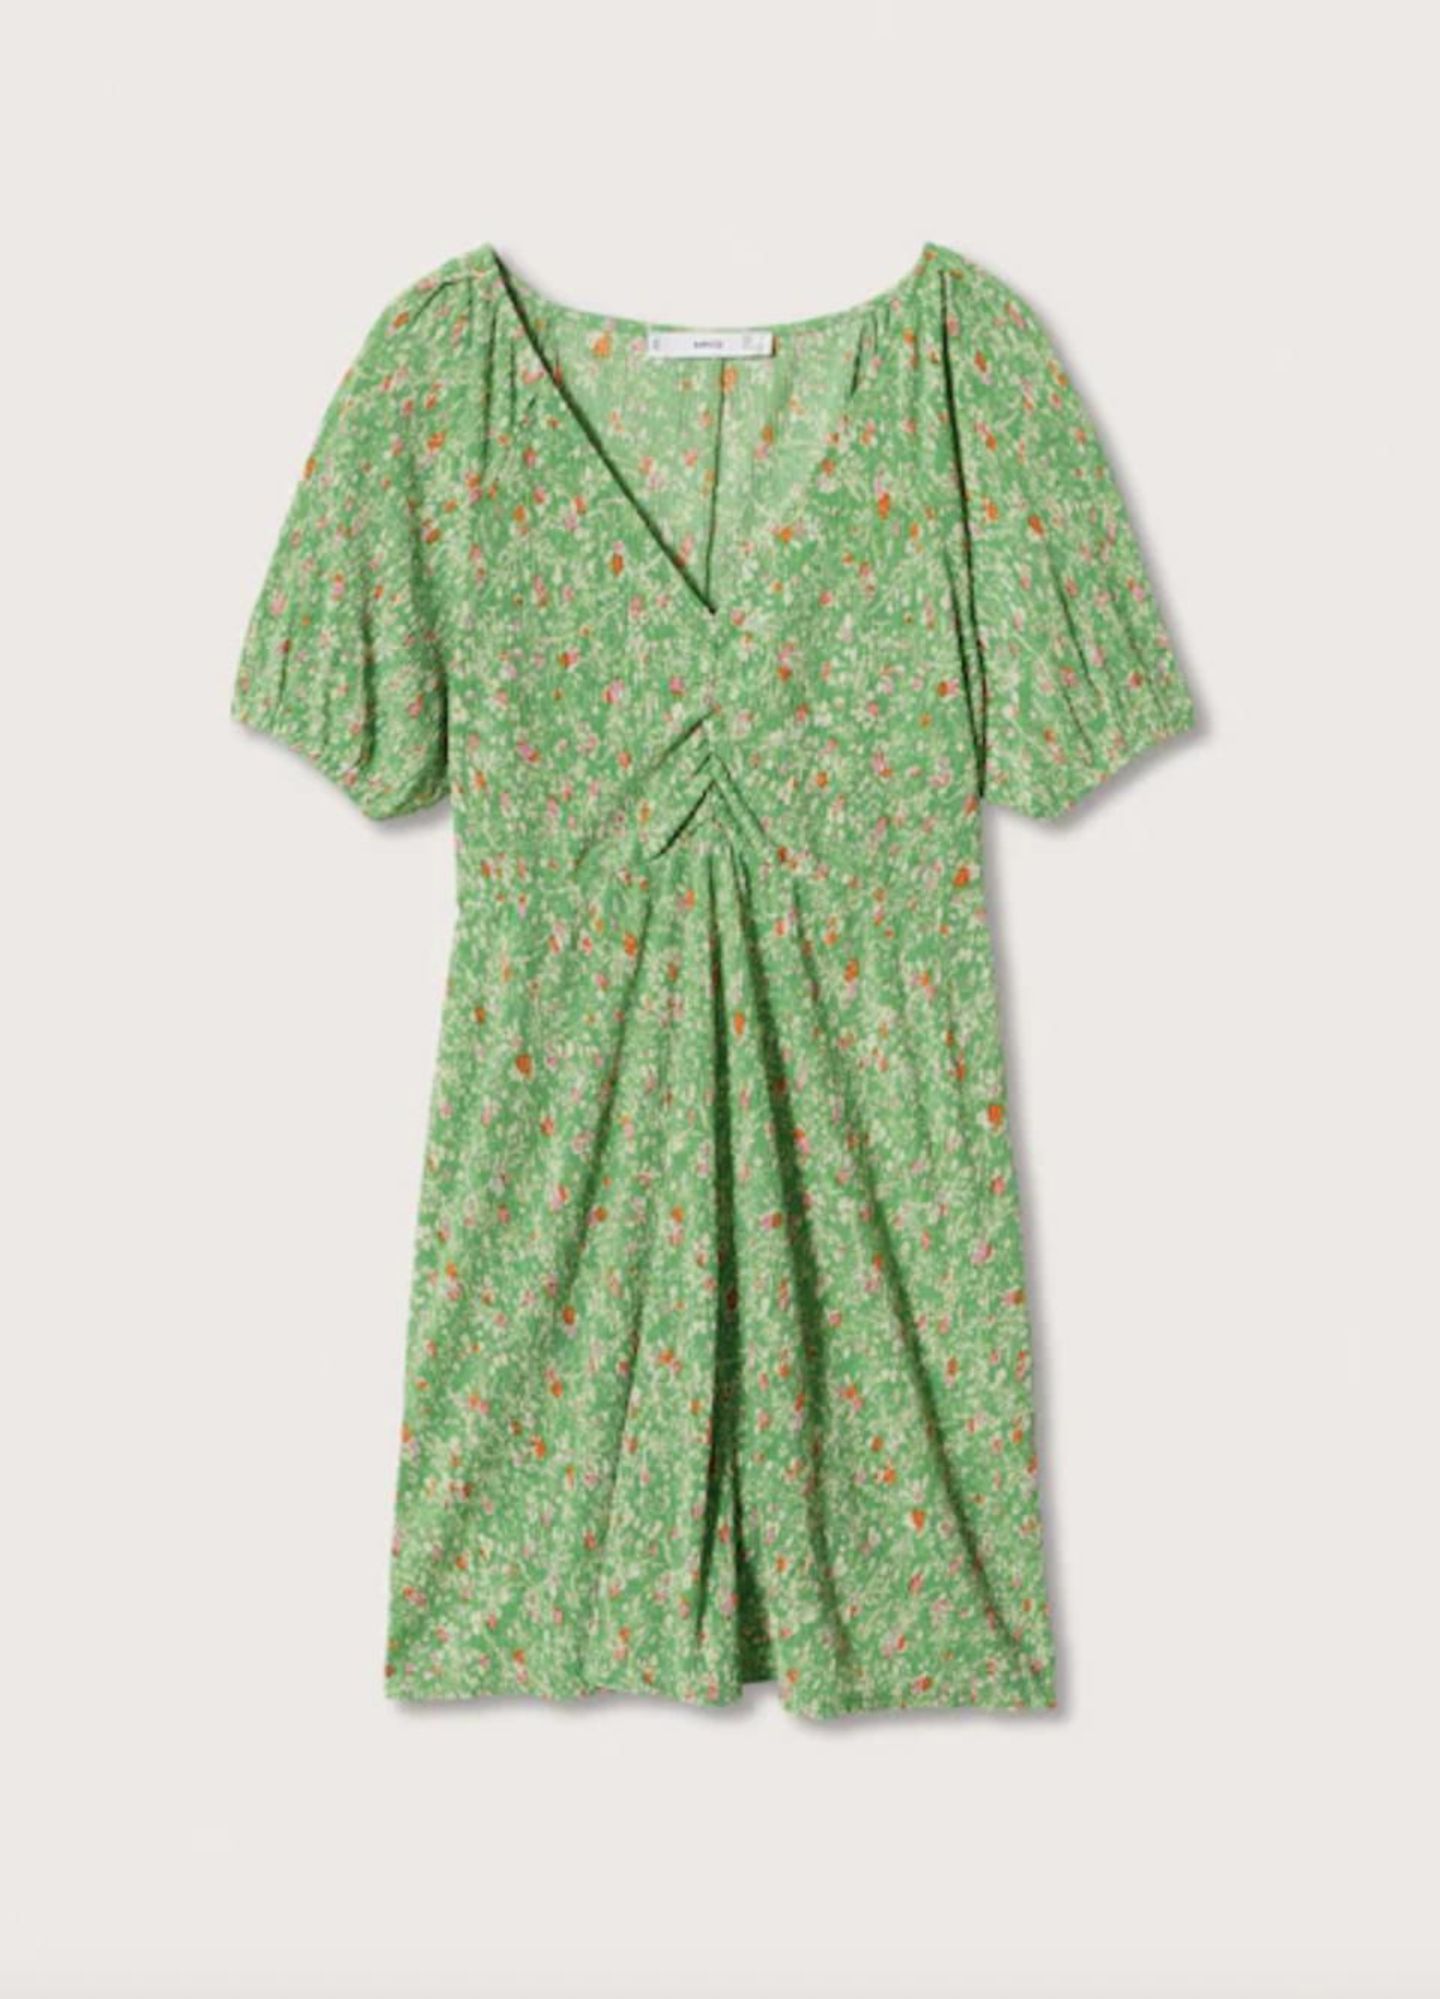 Sorgt in Turbo-Geschwindigkeit für Summer-Feeling: Das geblümte Mini-Kleid mit Blumen-Muster und Ärmchen hat es uns besonders angetan. Von Mango, kostet ca. 26 Euro. 